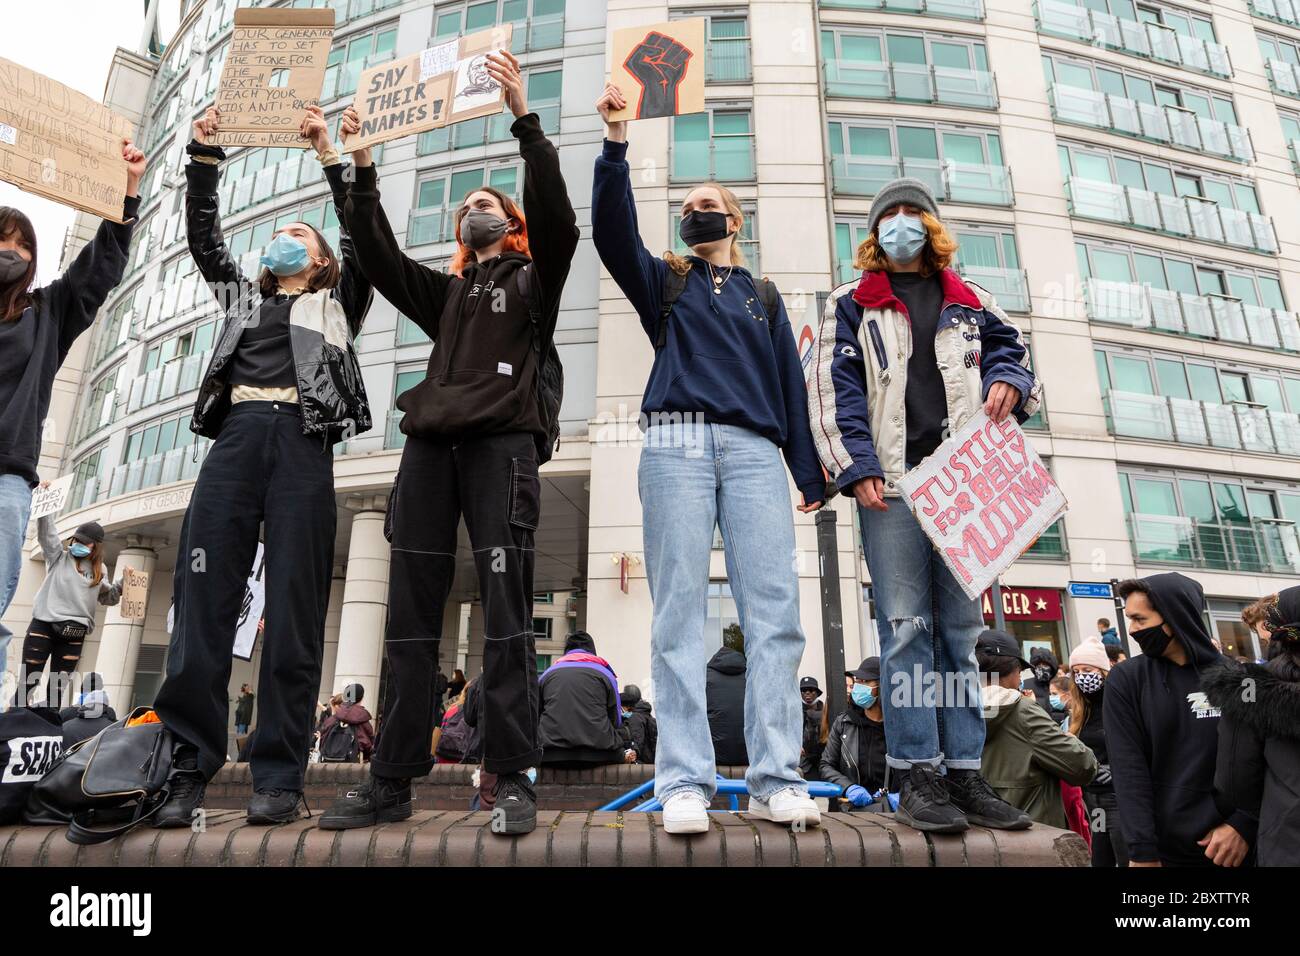 Un groupe de jeunes manifestants présente des signes à la manifestation Black Lives Matters à Vauxhall, Londres, le 6 juin 2020 Banque D'Images